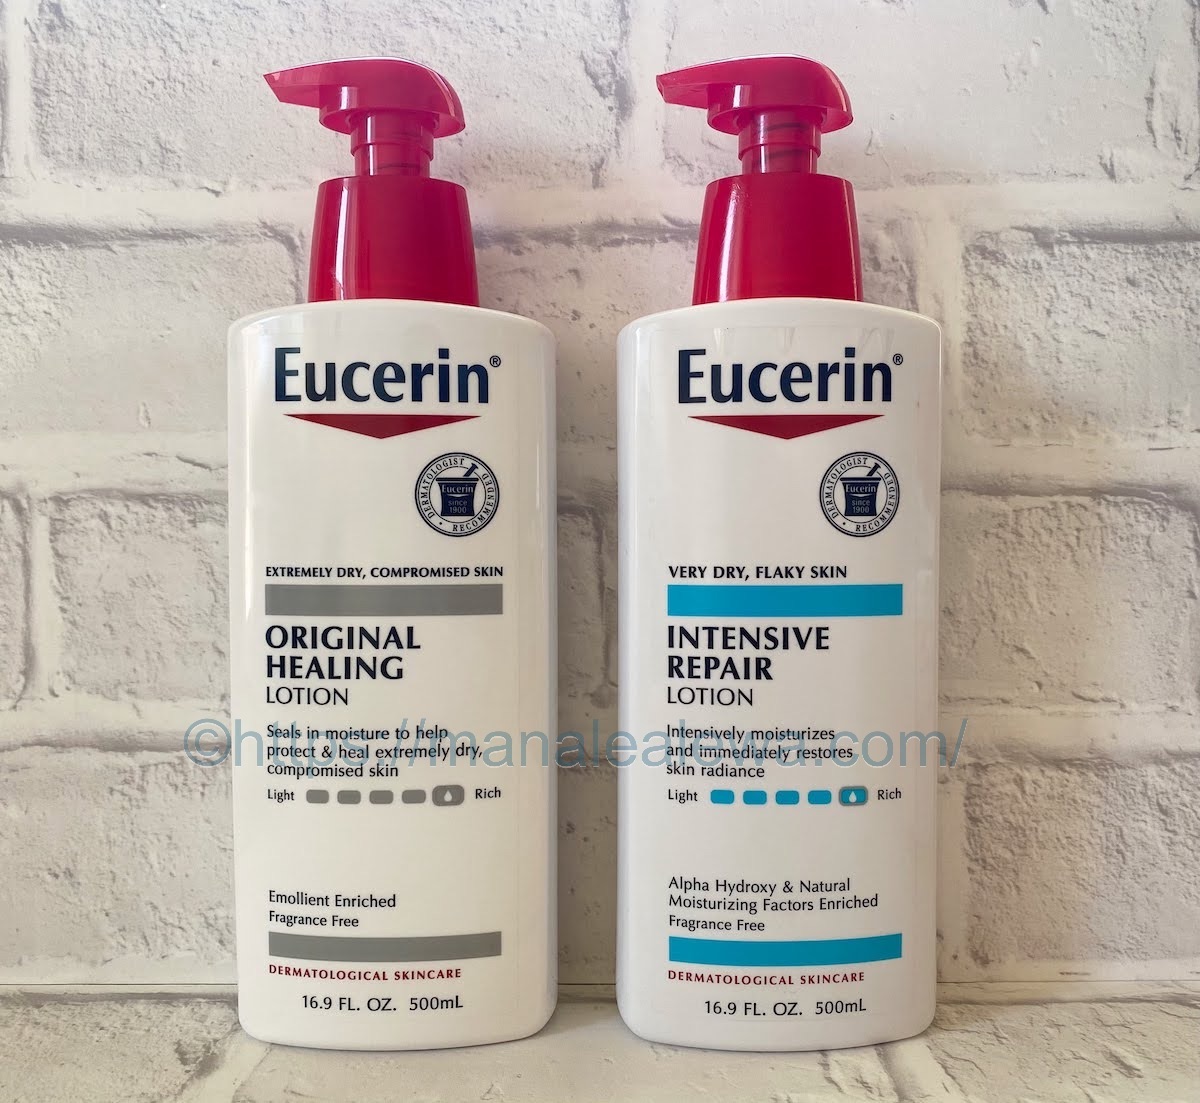 Eucerin-intensive-repair-original-healing-lotion